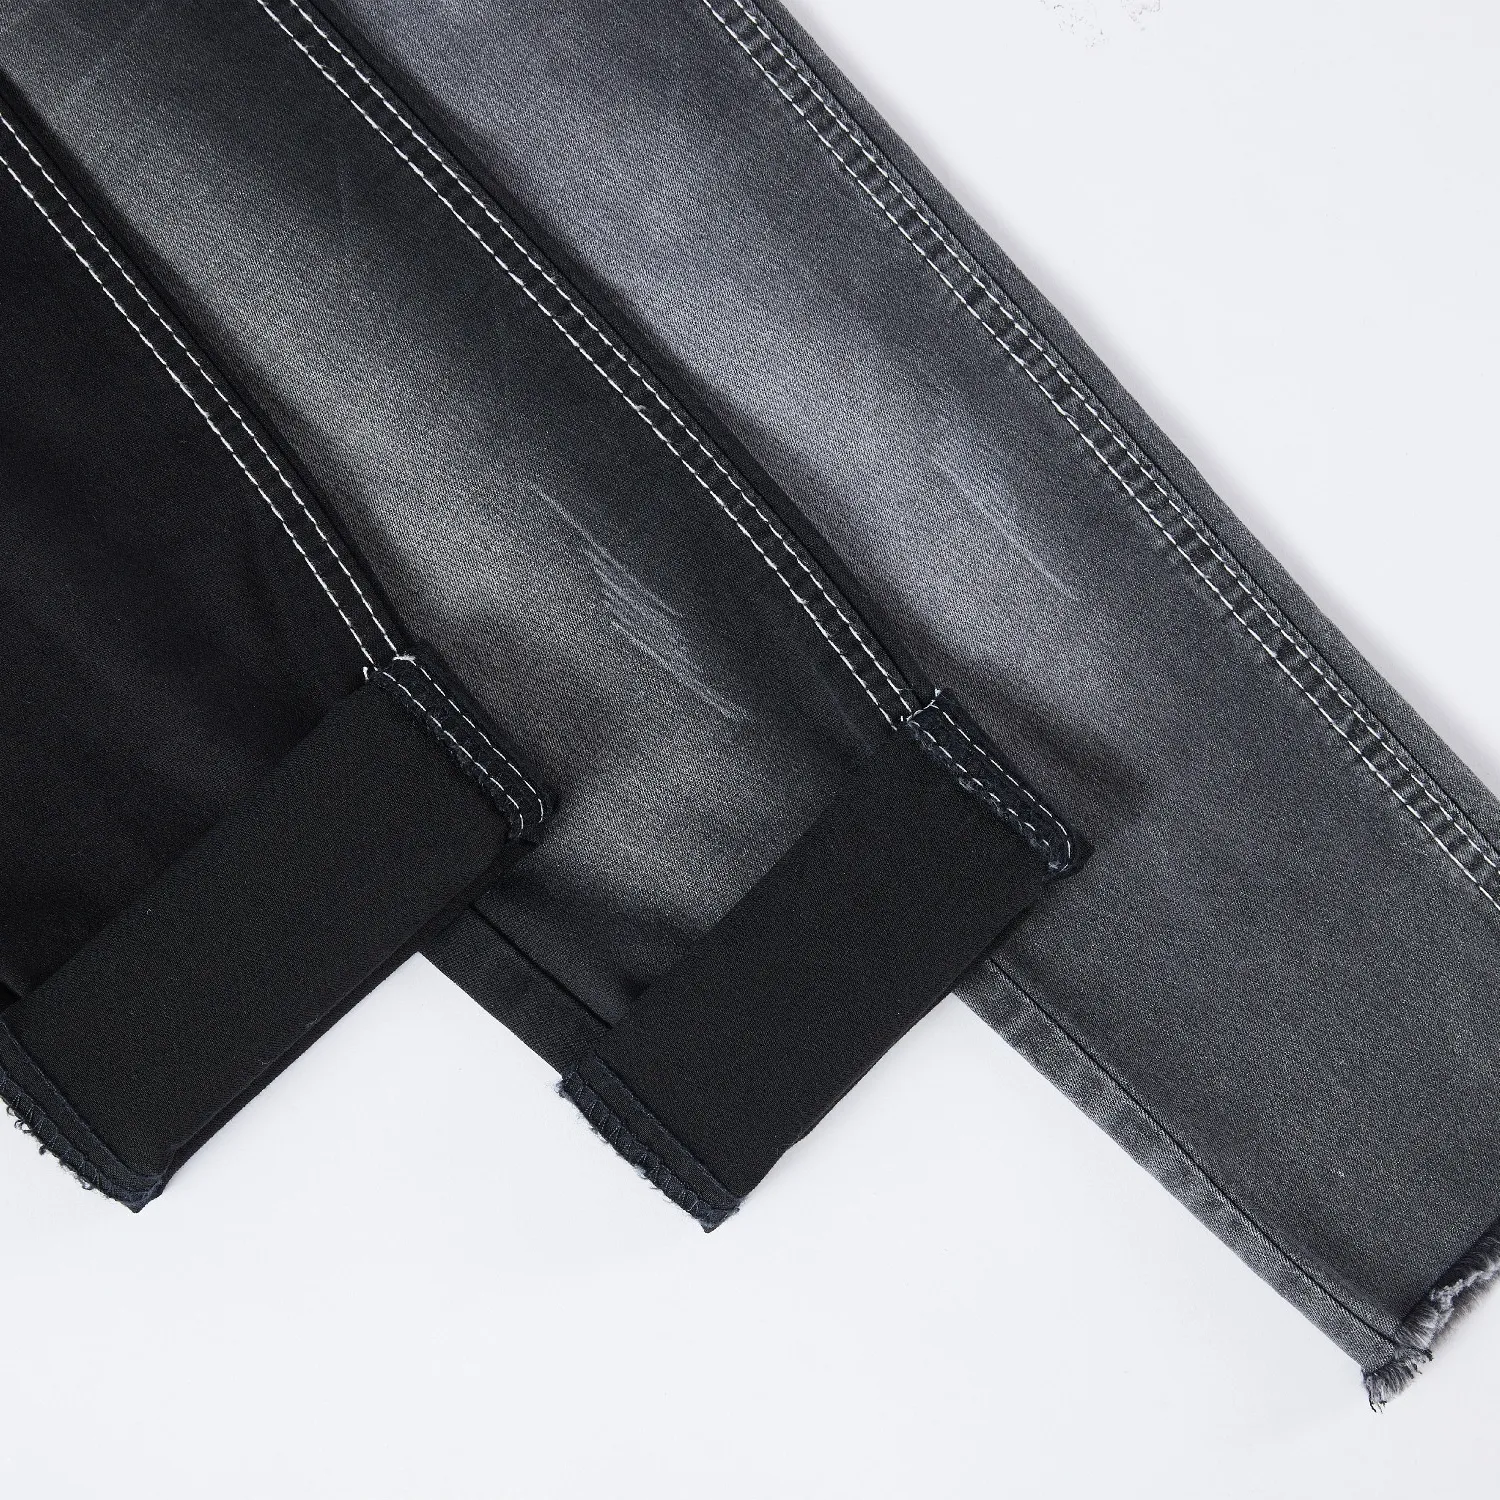 Umwelt freundliche Jeans Jeans Stoff GA001-1 Baumwolle Schwarz Farbe Spandex für Damen Jeans